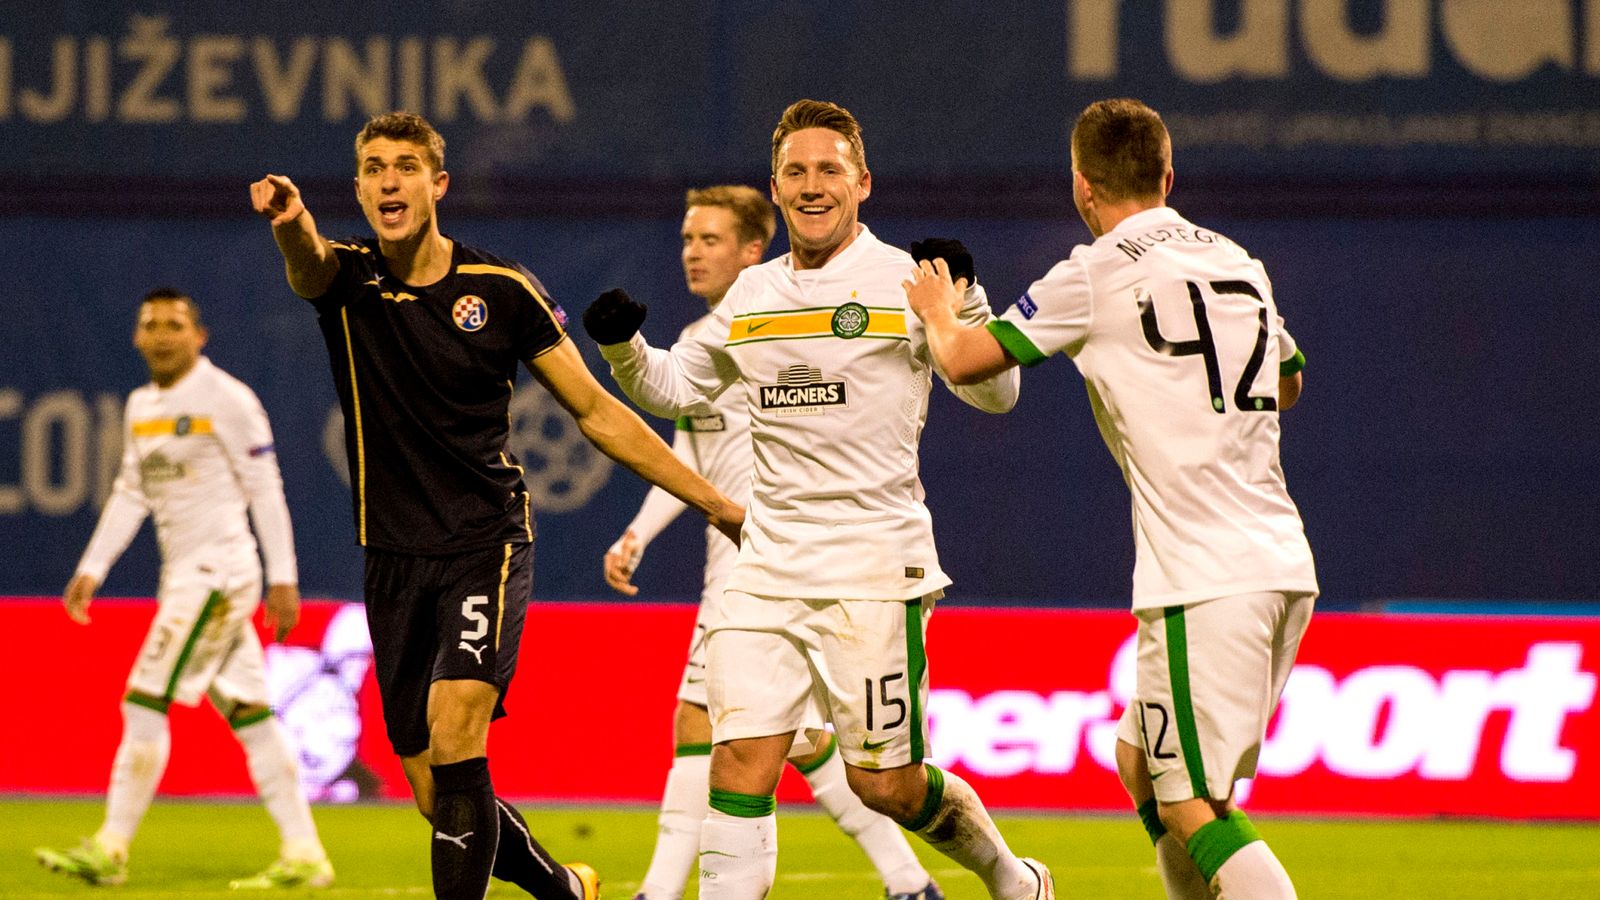 Din Zagreb 4 - 3 Celtic - Match Report & Highlights